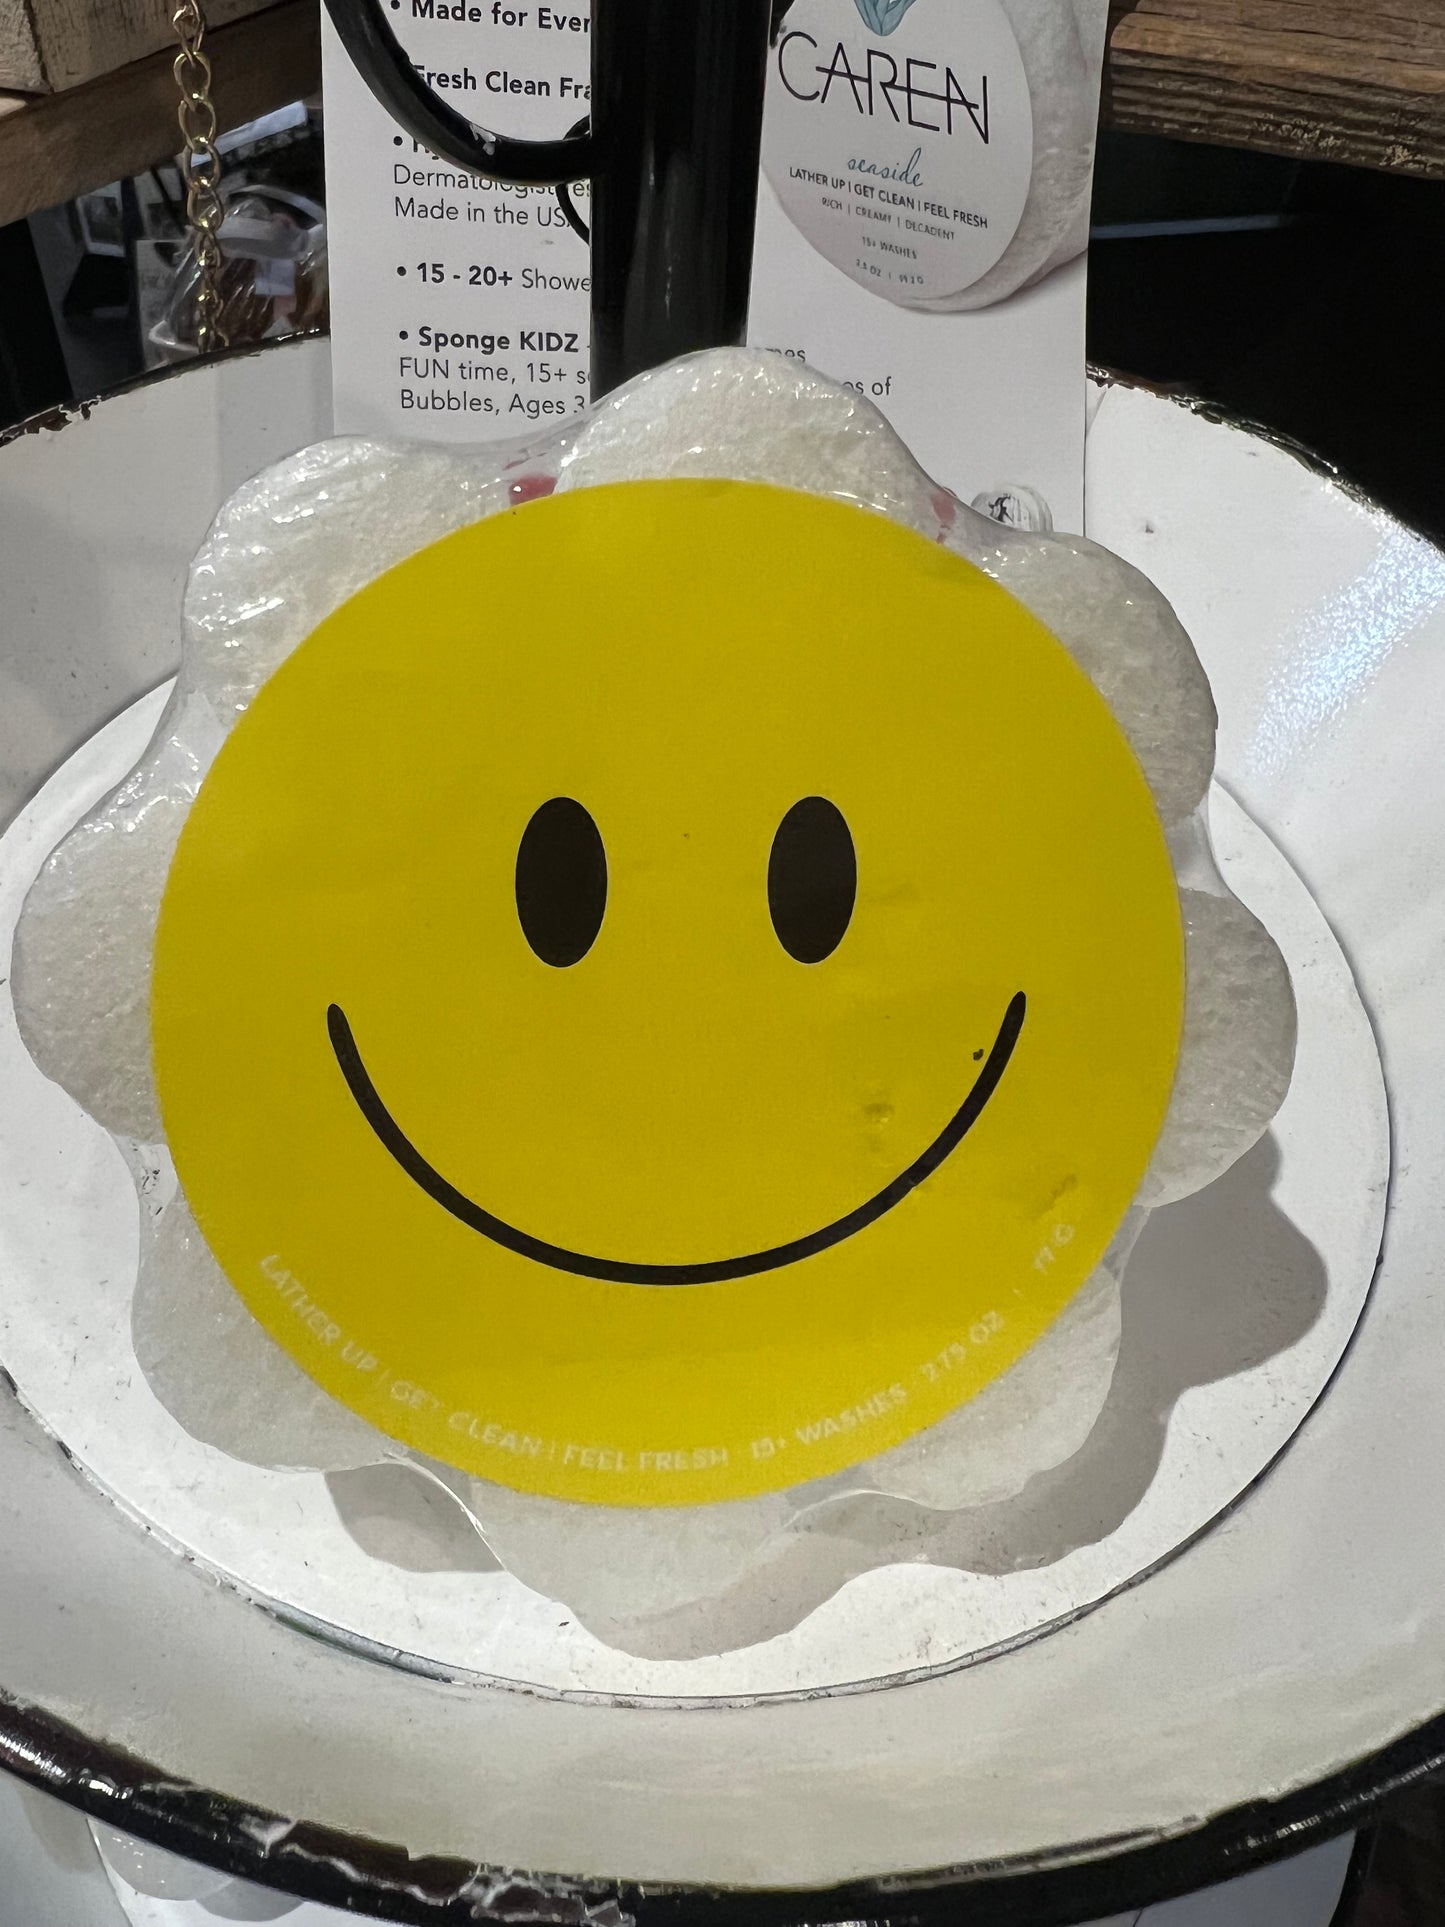 Caren smiley face soap sponge shaped like a white flower.